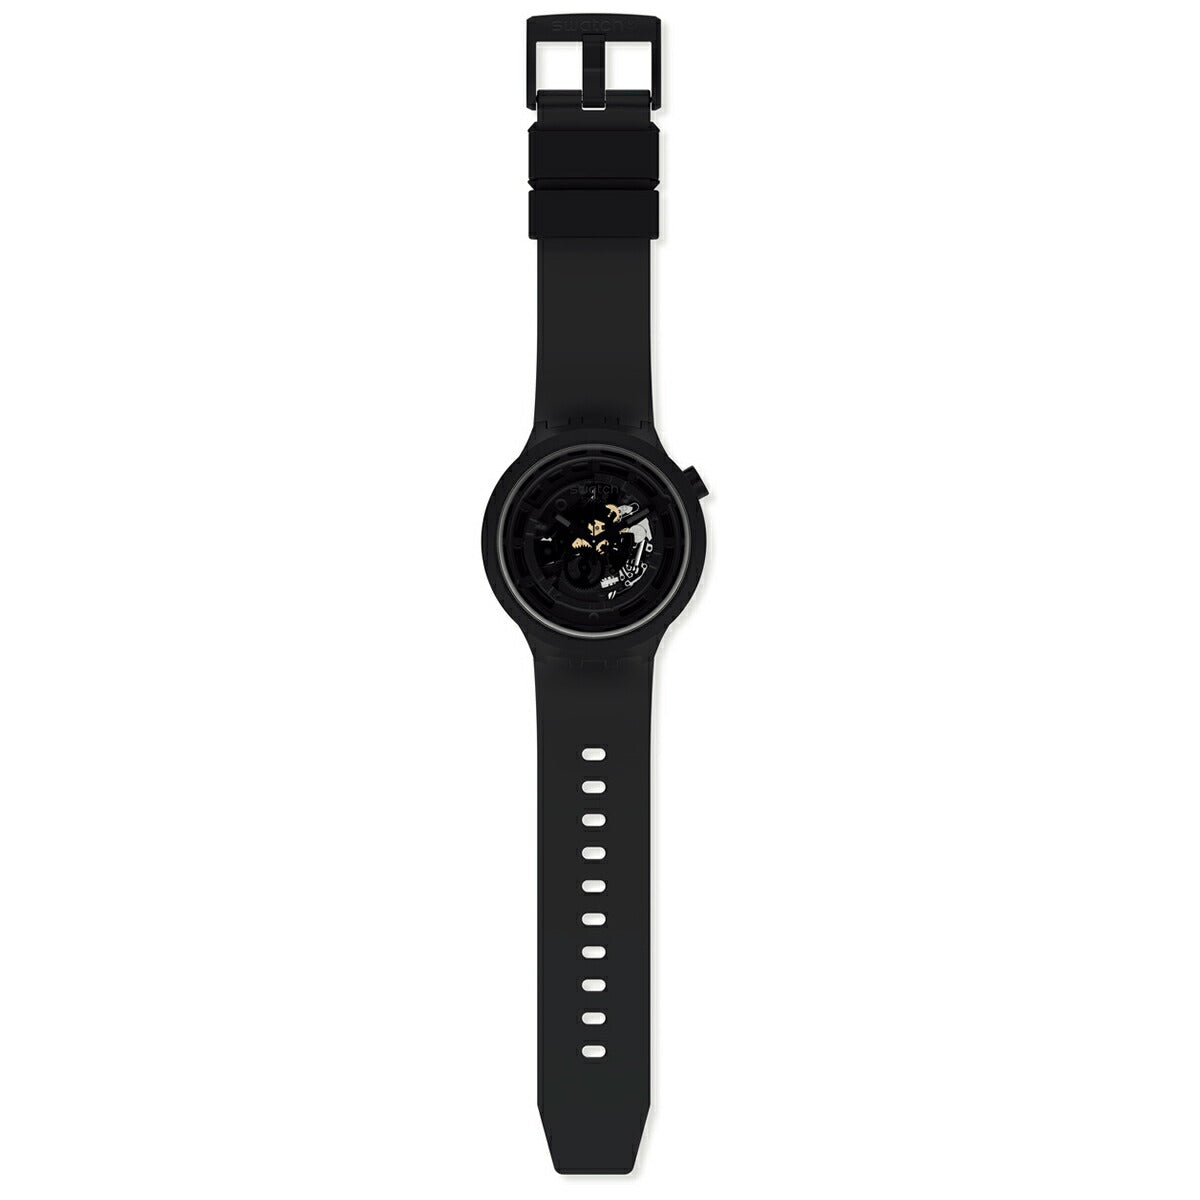 swatch スウォッチ 腕時計 メンズ レディース オリジナルズ ビッグボールド バイオセラミック C-BLACK BIG BOLD BIOCERAMIC SB03B100